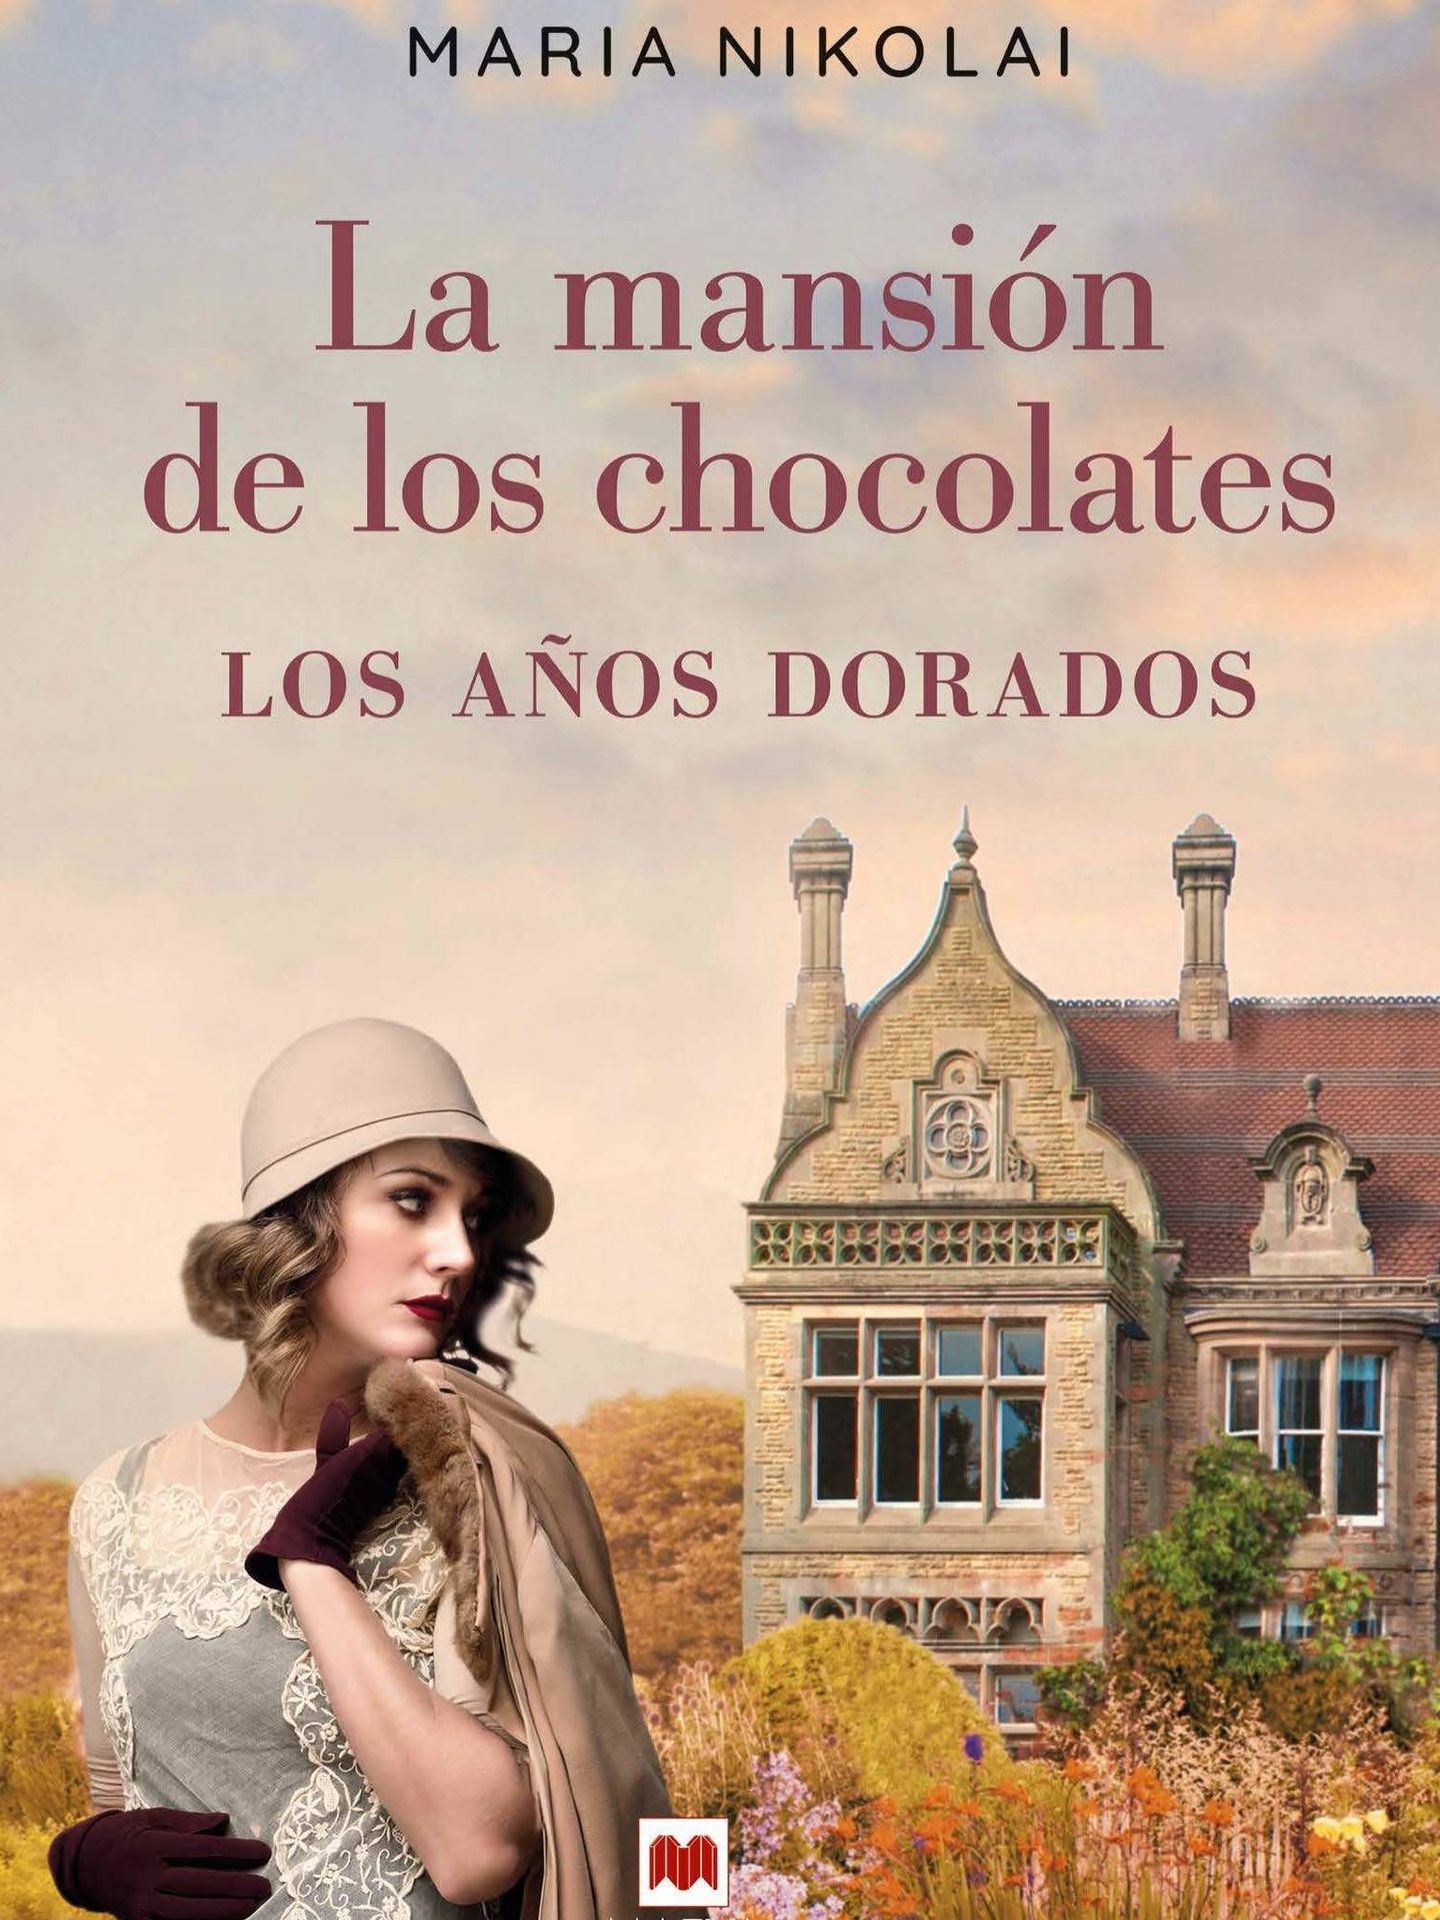 'La mansión de los chocolates'.